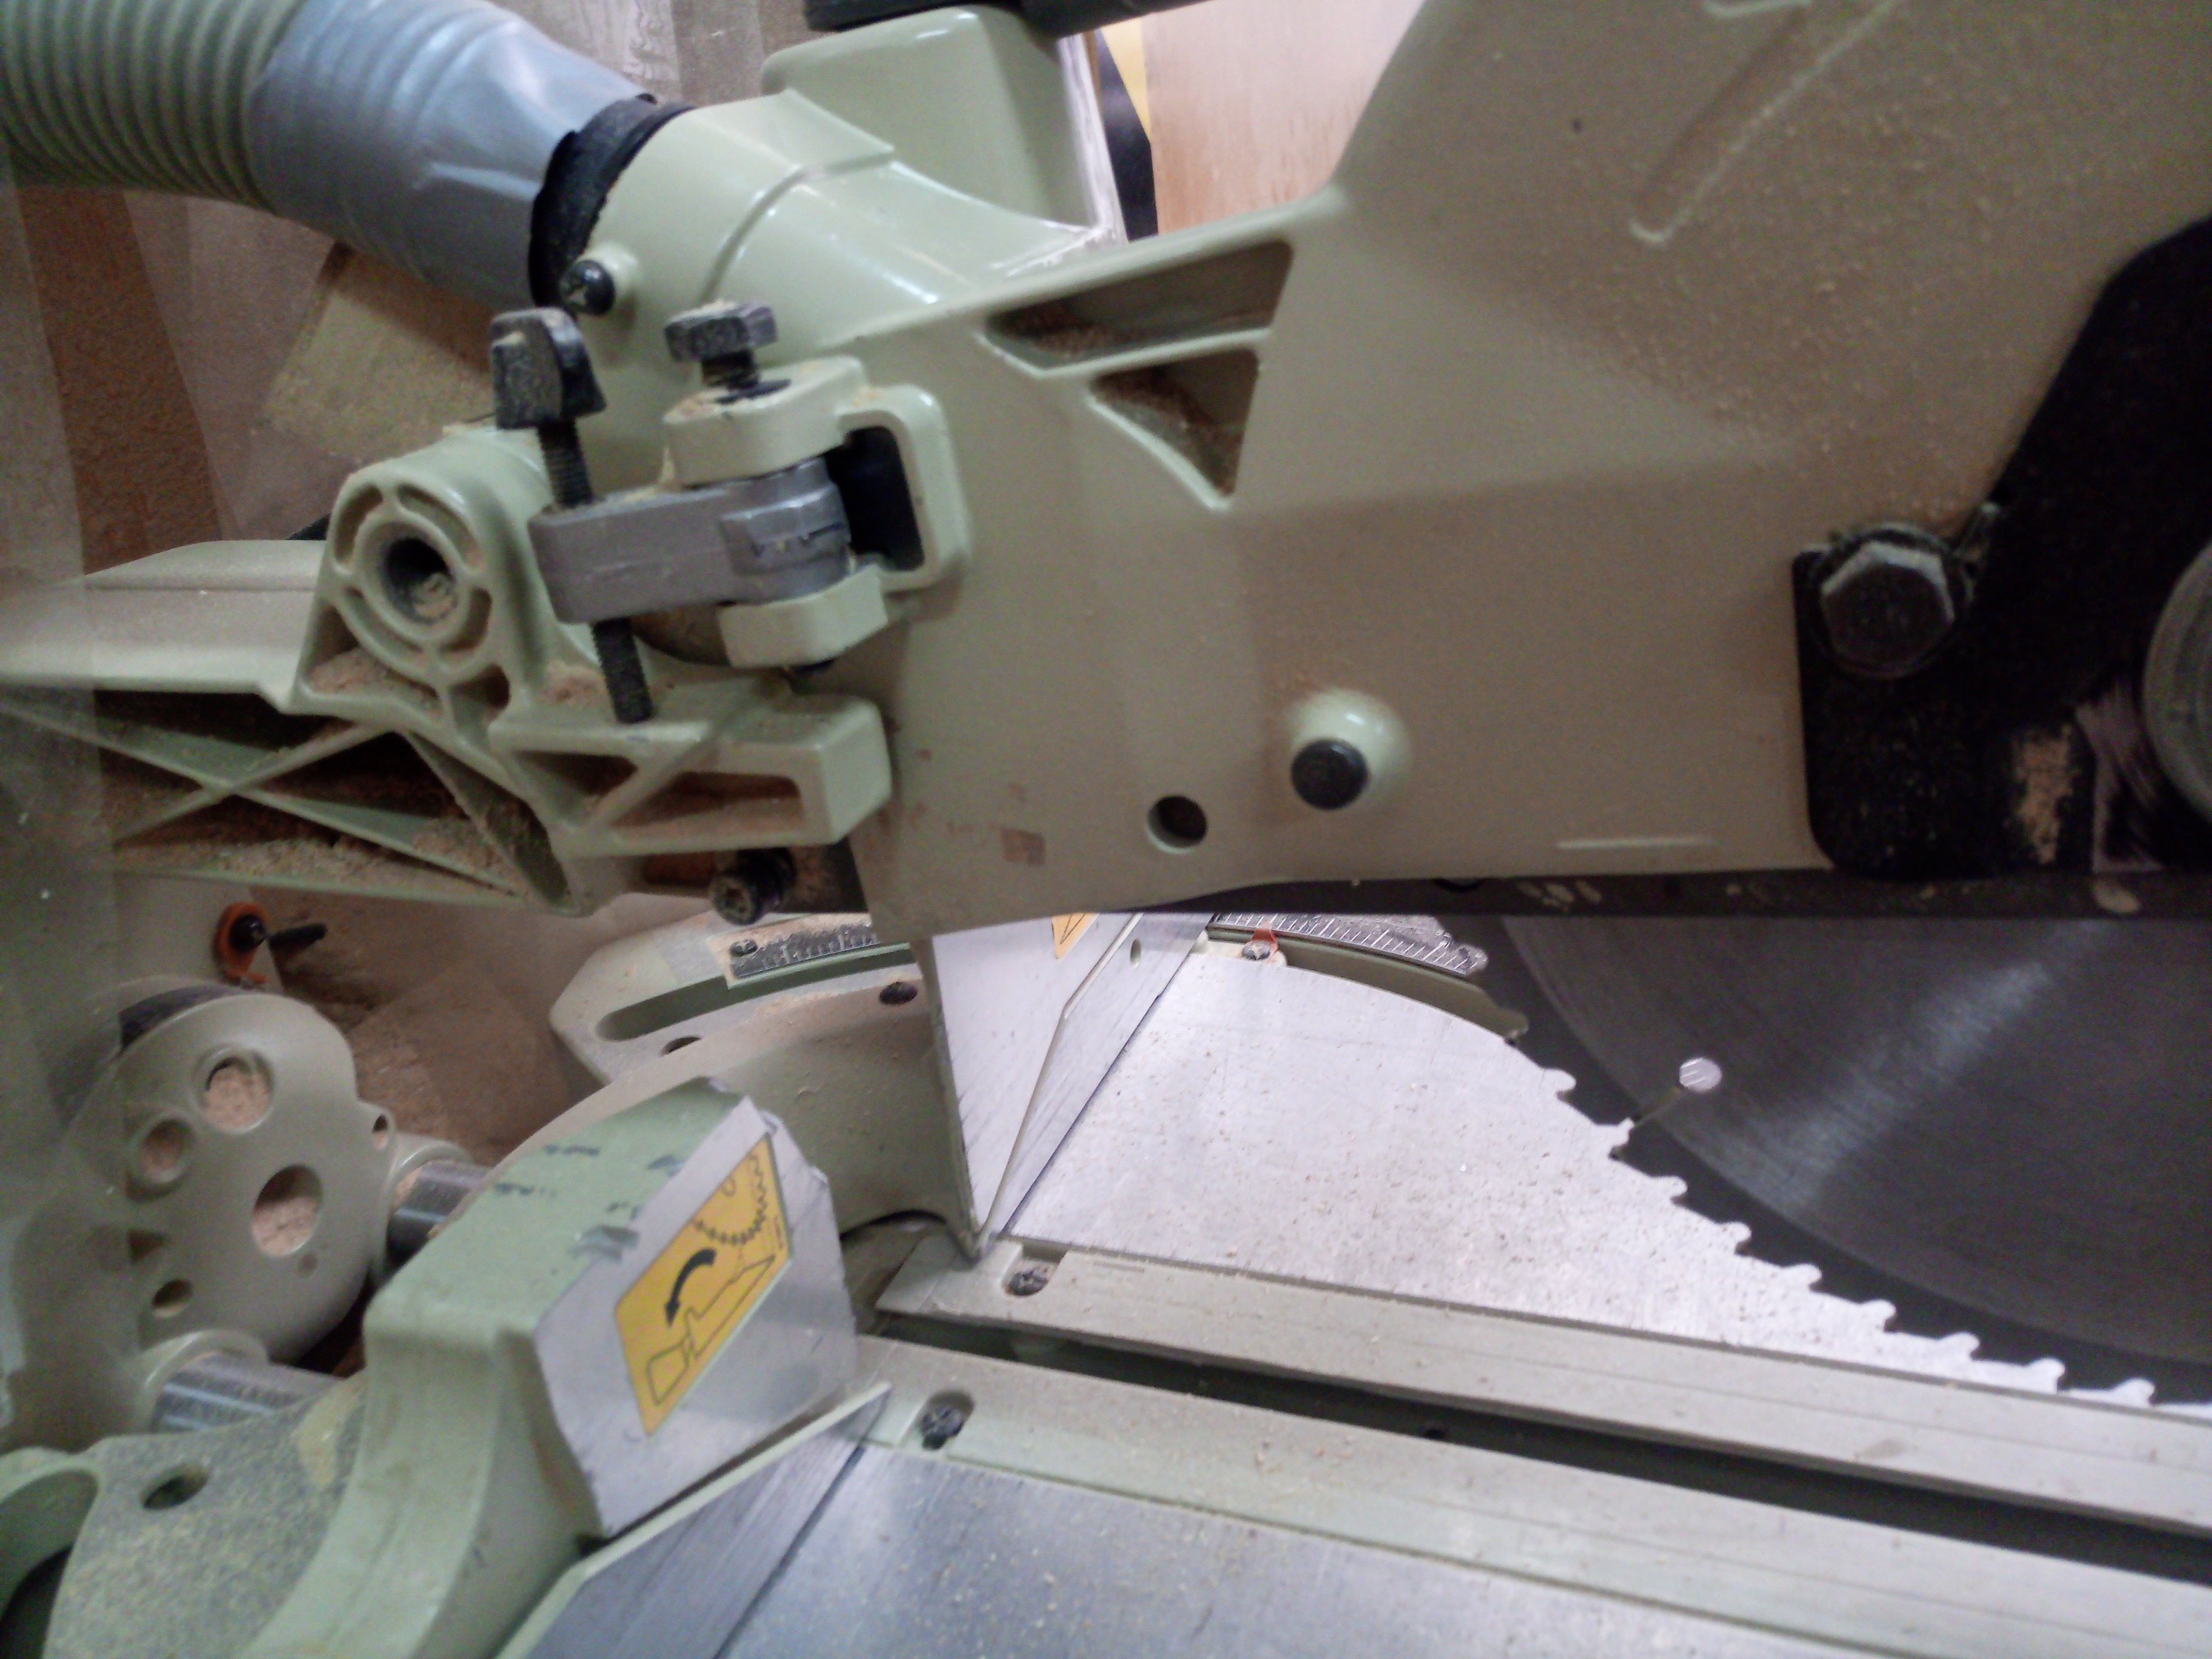 Sierra de brazo radial Dewalt Dw720 - Maquinaria y herramienta eléctrica -  Foromadera